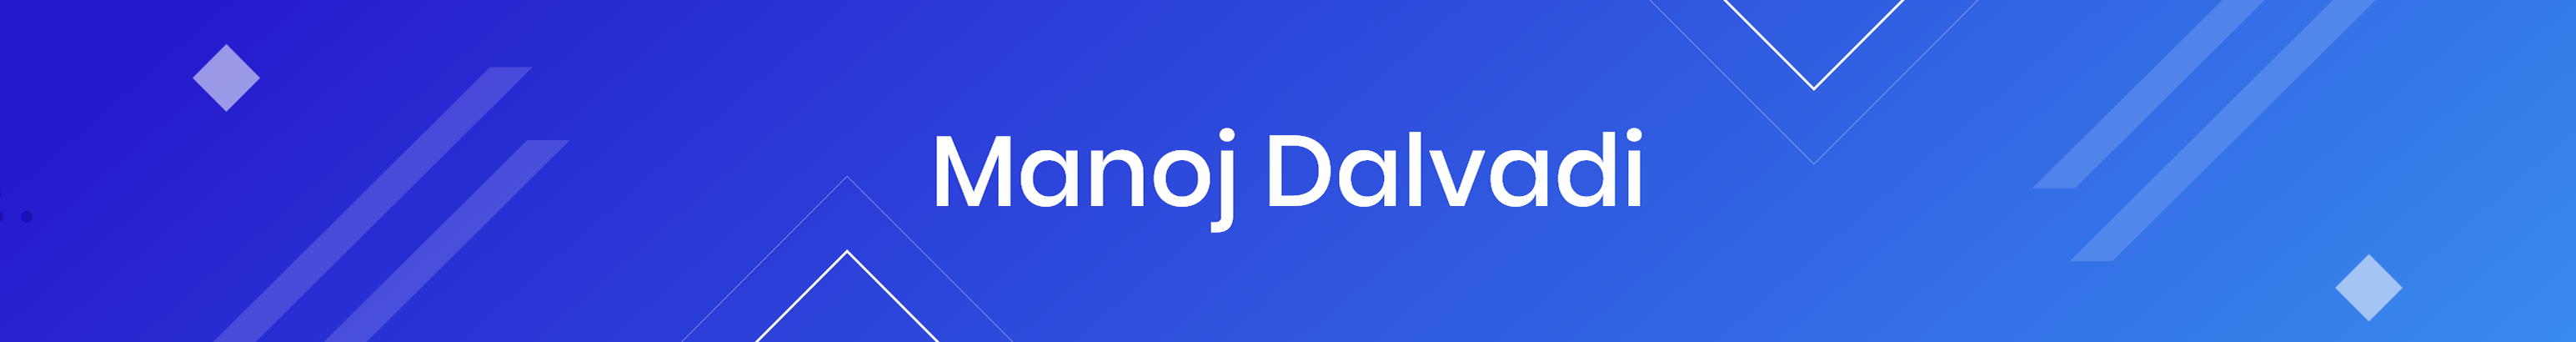 Banner de perfil de Manoj dalvadi